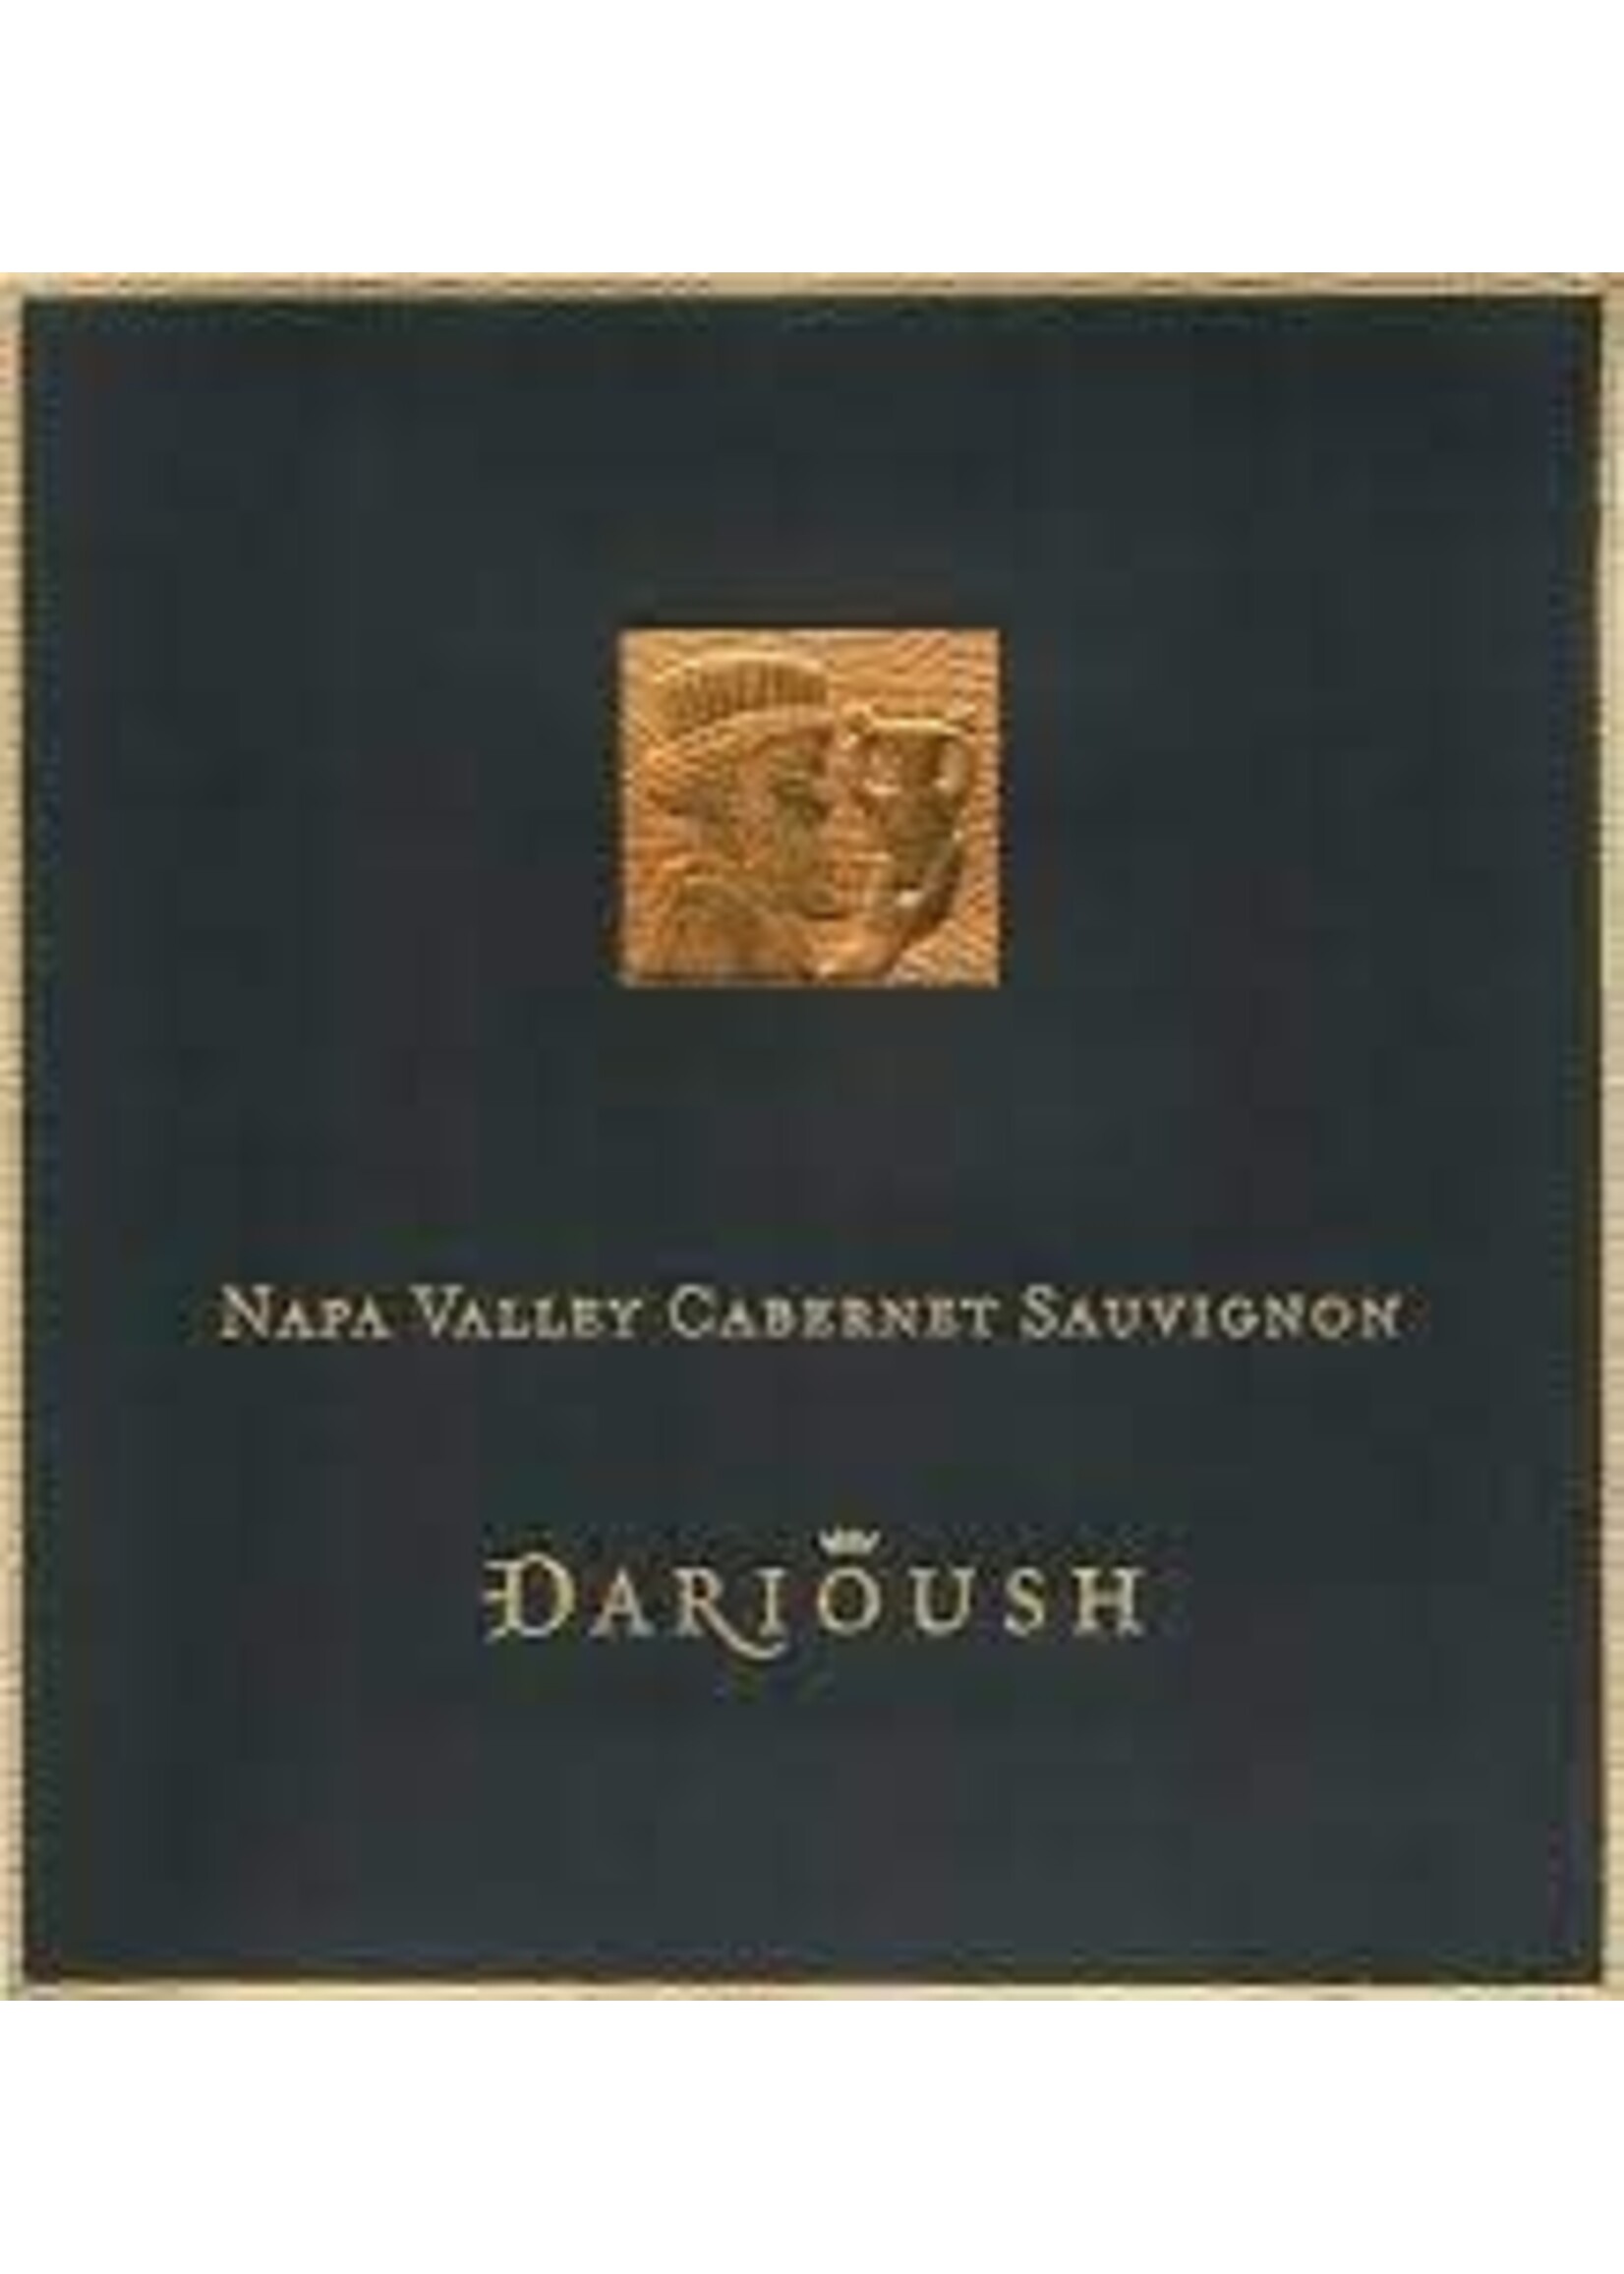 Darioush 2020 Signature Series Cabernet Sauvignon 750ml